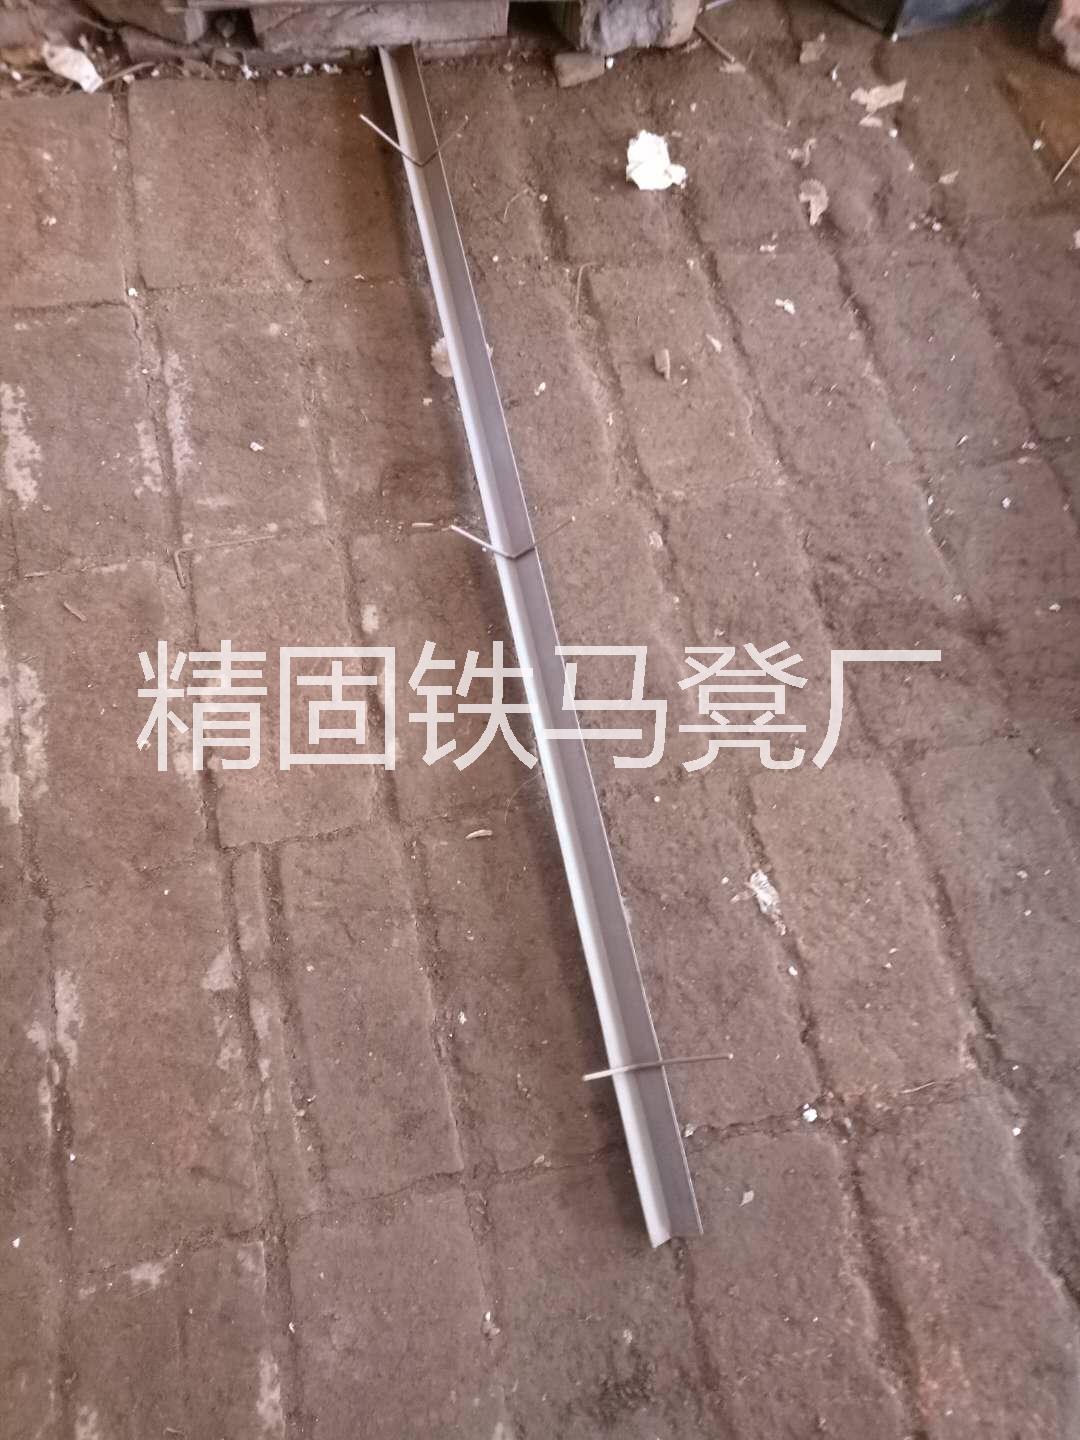 铁马凳捆绑技术 河北铁马凳销售 北京铁马凳工厂 北京低价铁马凳 河北铁马凳销售 铁马凳捆绑技术